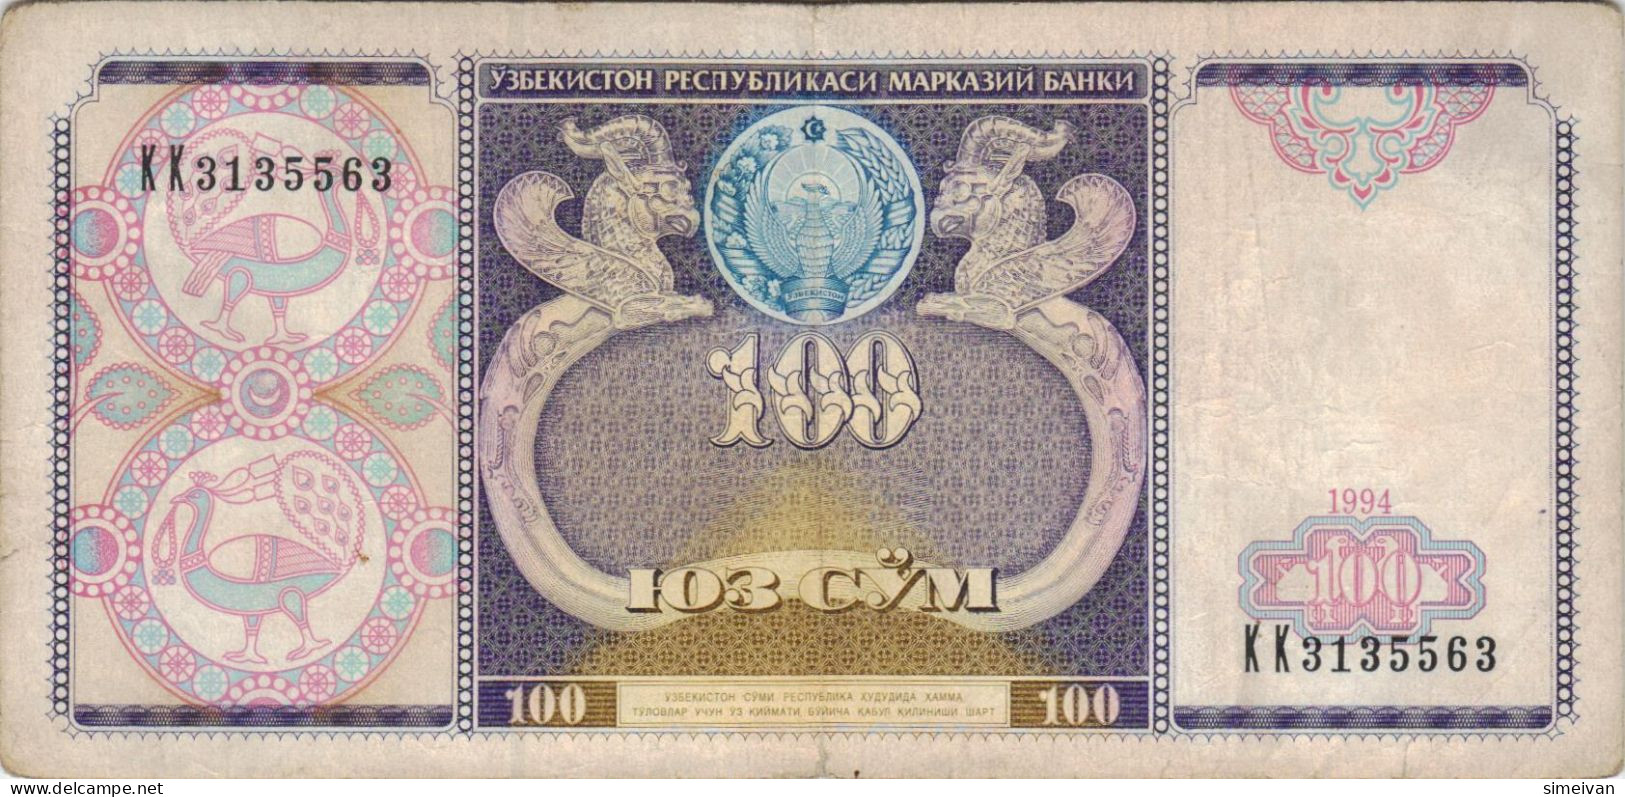 Uzbekistan 100 Sum 1994 P-79a Banknote Asia Currency Ouzbékistan Usbekistan #5336 - Uzbekistán